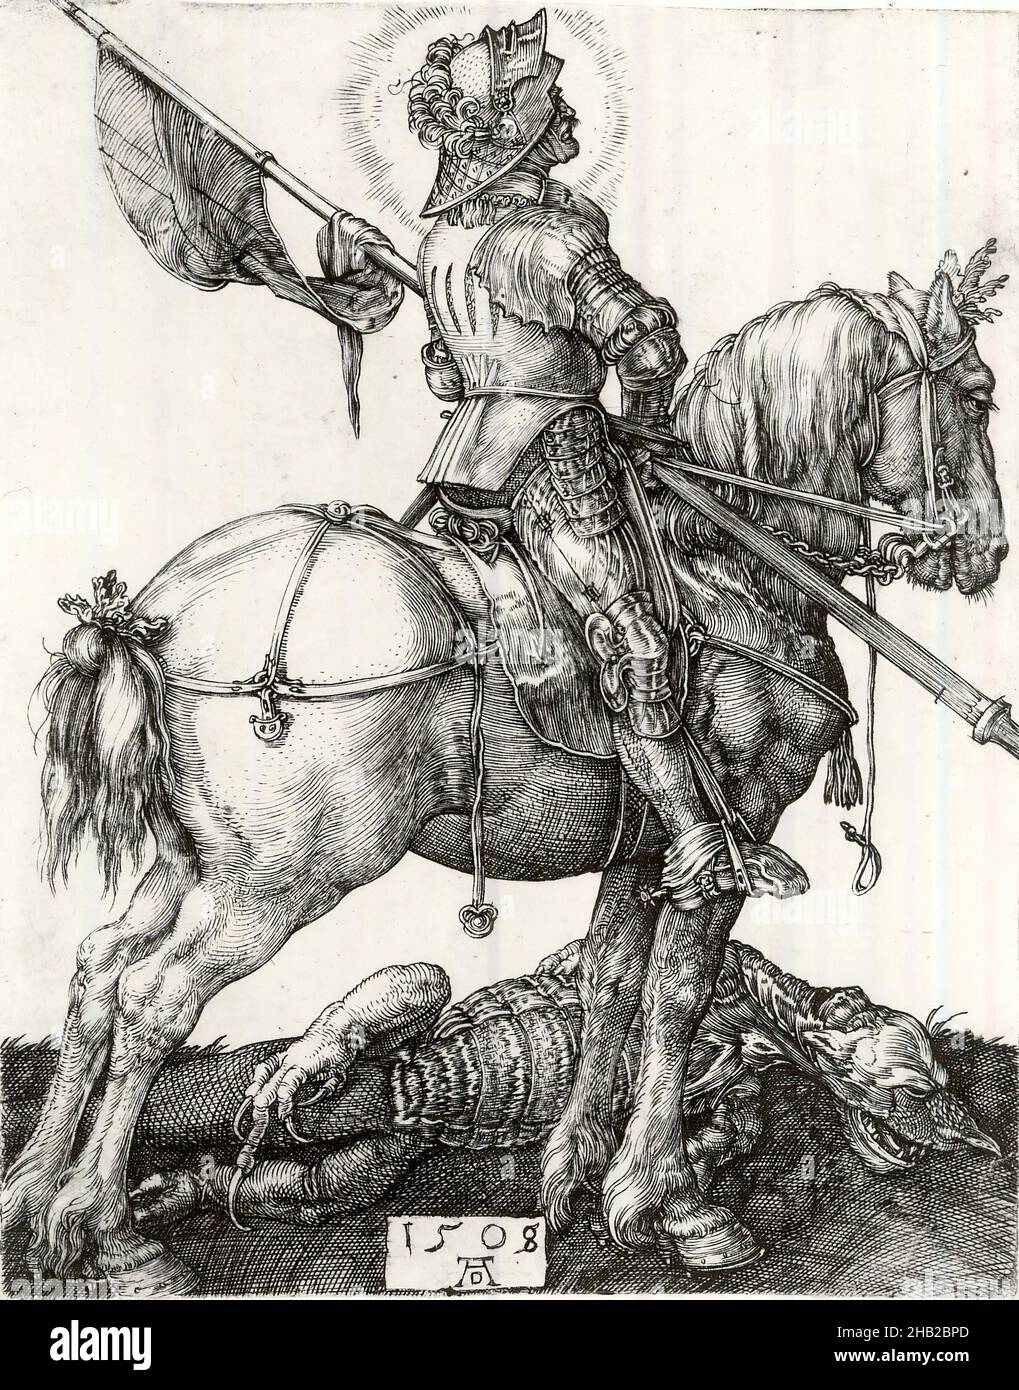 Saint George et le Dragon, Albrecht Dürer, allemand, 1471-1528, gravure sur papier ponté, 1508, 4 1/4 x 3 3/8 po, 10,8 x 8,6 cm, croisé, dragon, drapeau, halo,cheval, chevalier, puissant, slayer, victorieux,guerre Banque D'Images